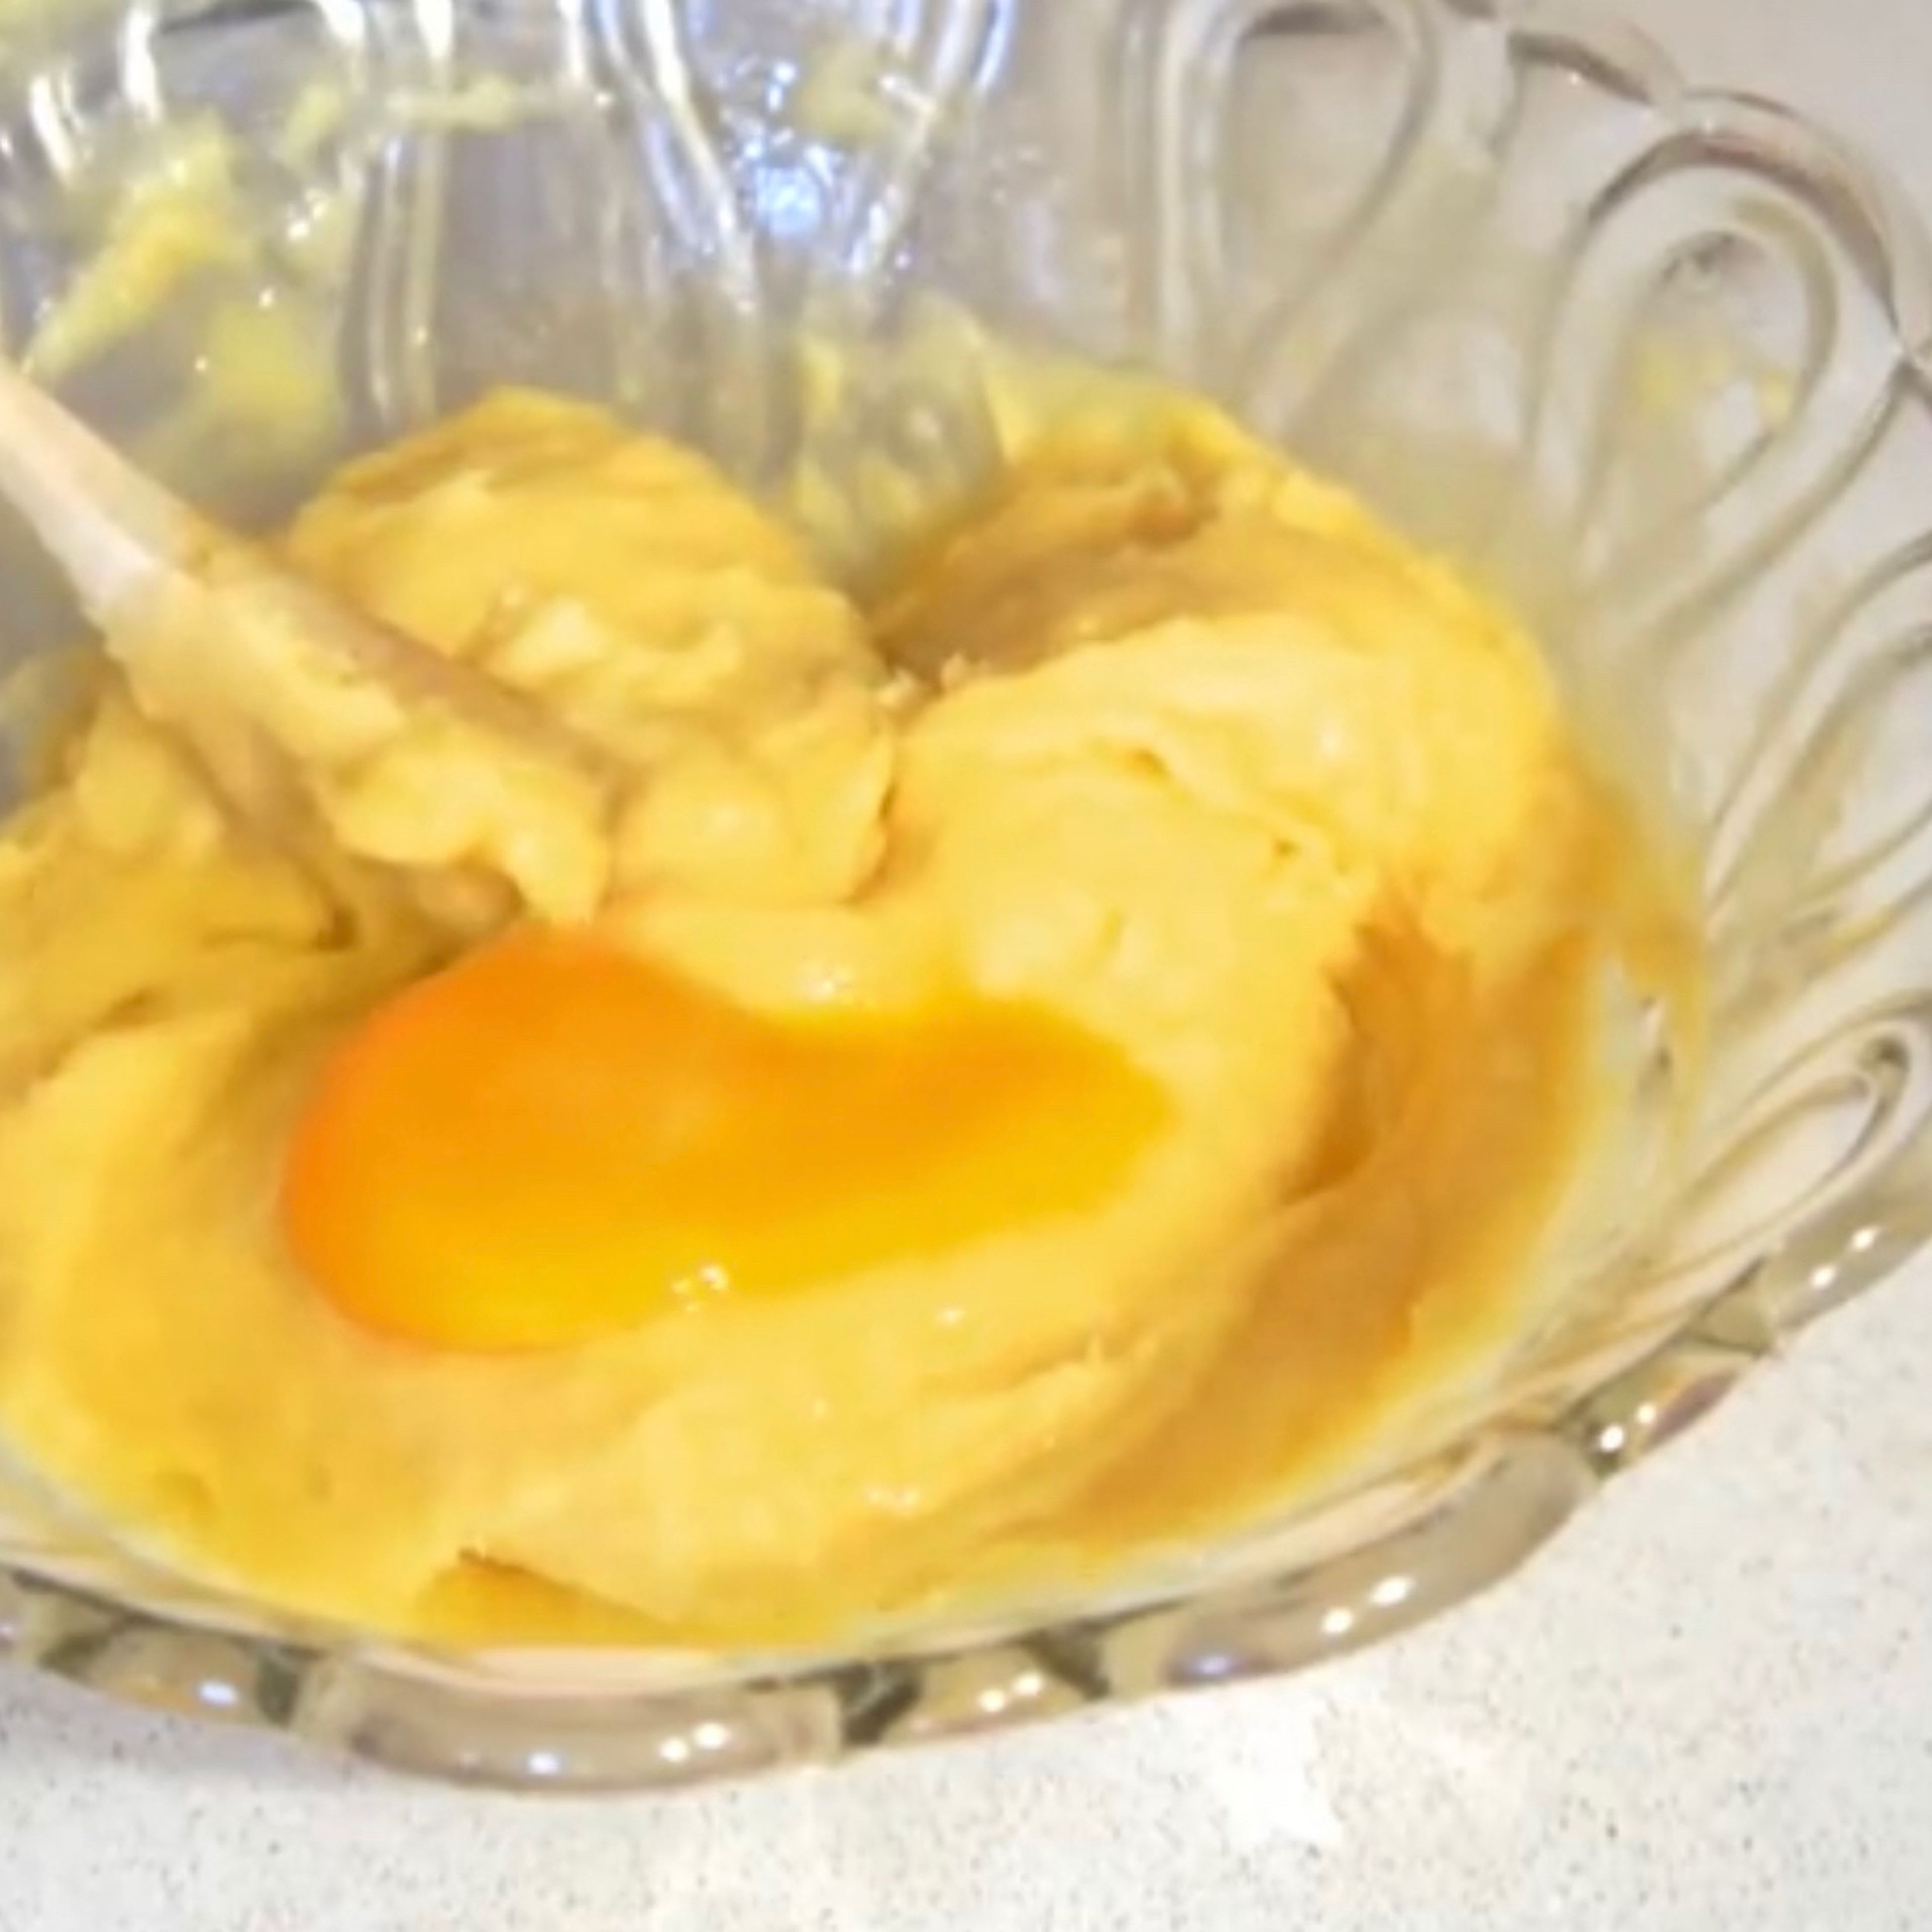 Den Teig in eine Schüssel geben und etwas abkühlen lassen. Danach die Eier nach und nach beim mischen hinzufügen bis der Teig die Eier vollständig aufgesogen hat.